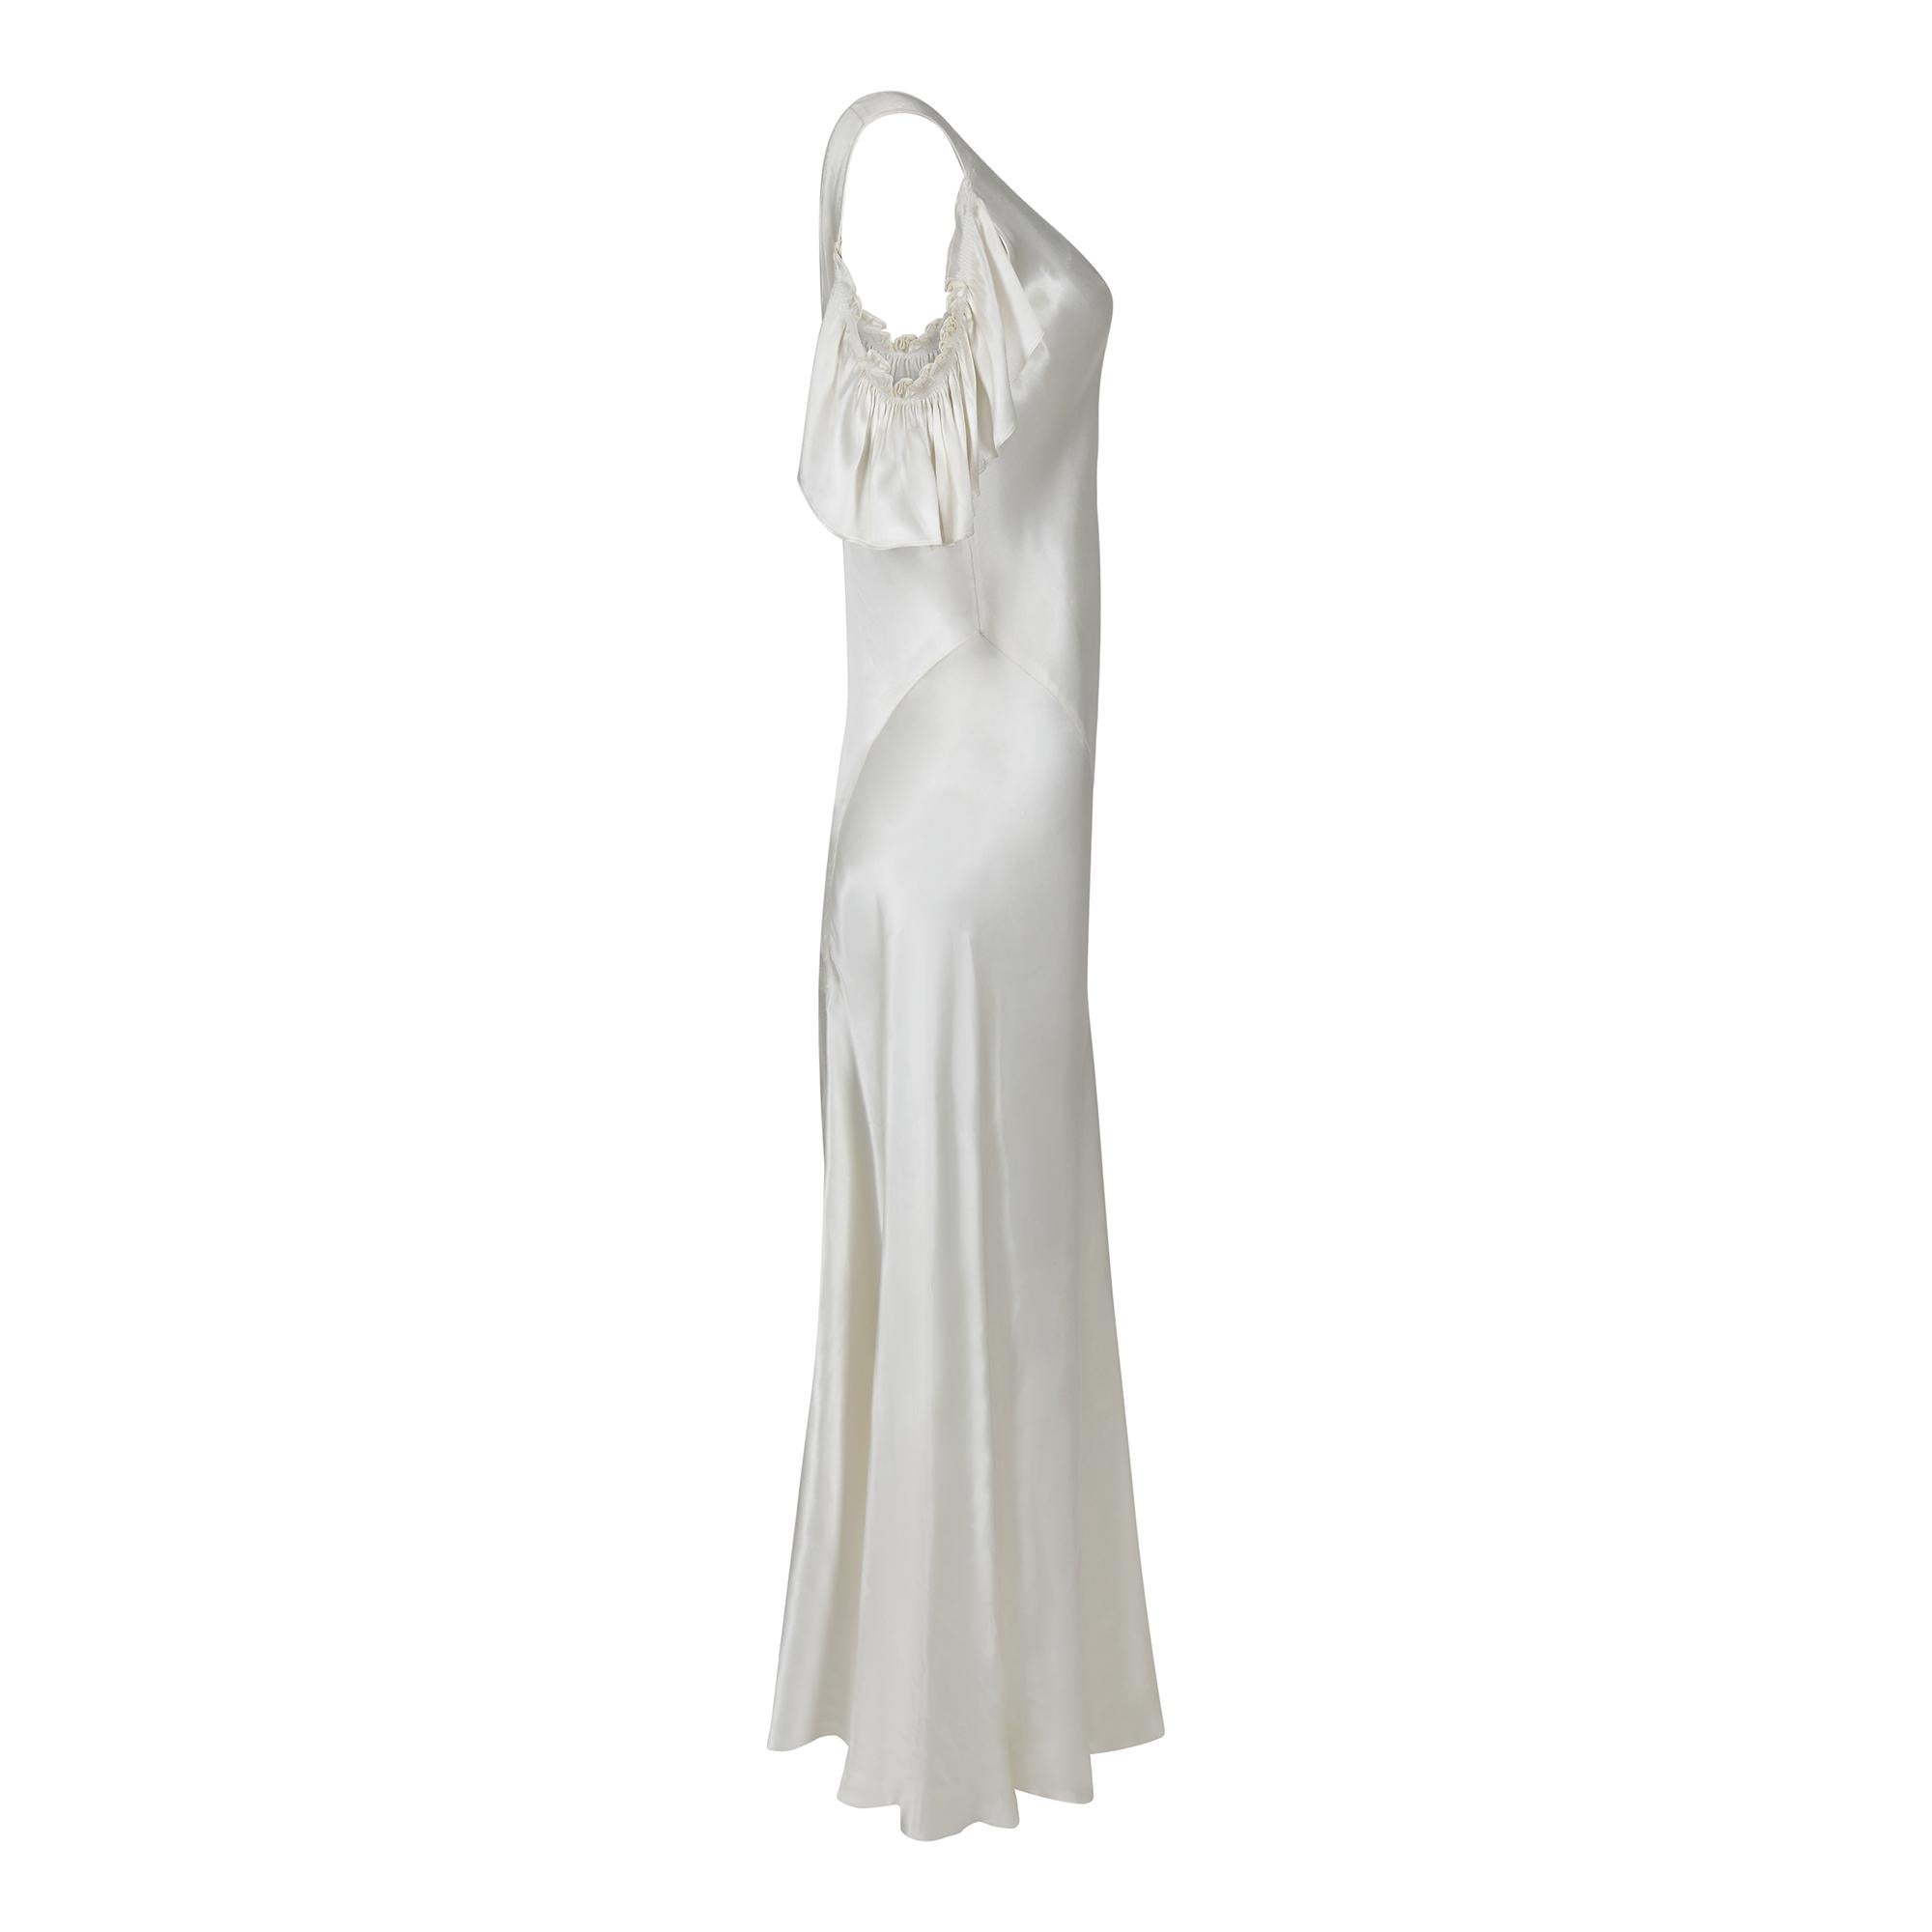 Dieses originale elfenbeinfarbene Satin-Hochzeitskleid aus den 1930er Jahren ist sehr tragbar und hat gut ausgeführte Schrägschnitte, die beachtliche Muster und Schnittfähigkeiten zeigen. Der Satin hat eine helle und glänzende Elfenbeinfarbe. Der